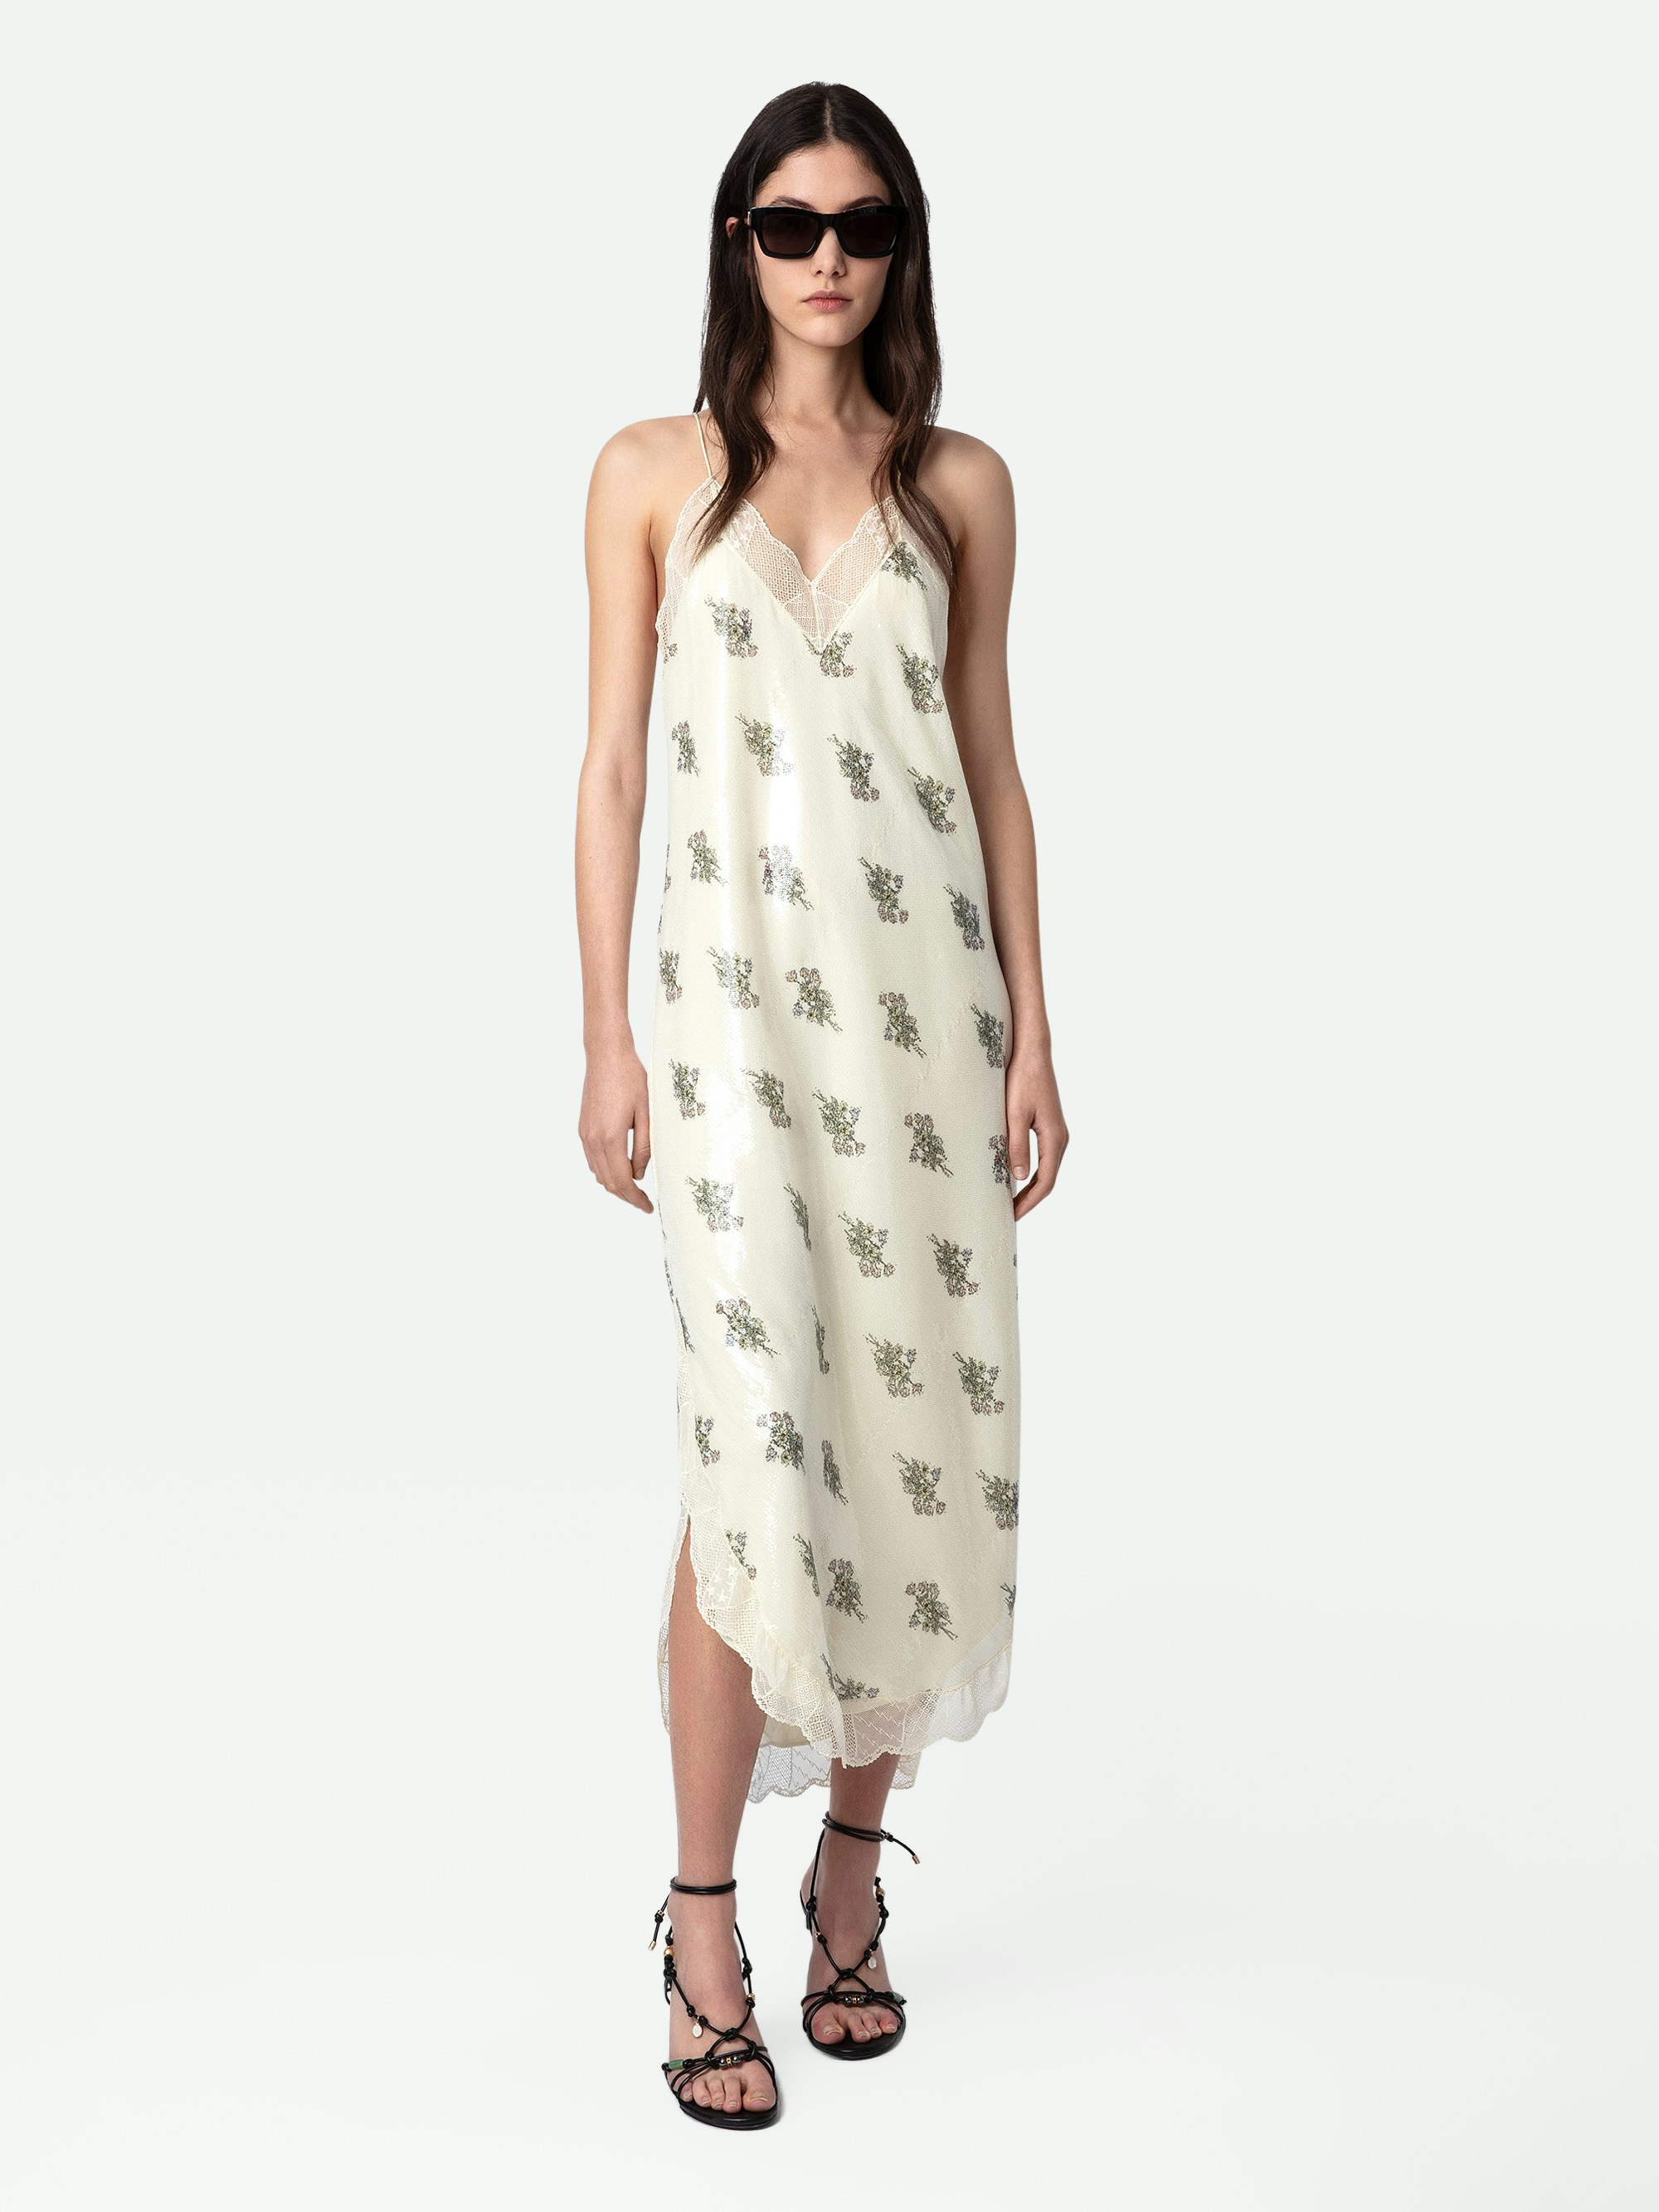 Kleid Ristyl Pailletten - Langes, ecrufarbenes Kleid im Lingerie-Stil mit Blumenprint, Pailletten, Trägern und Spitzenbordüre.